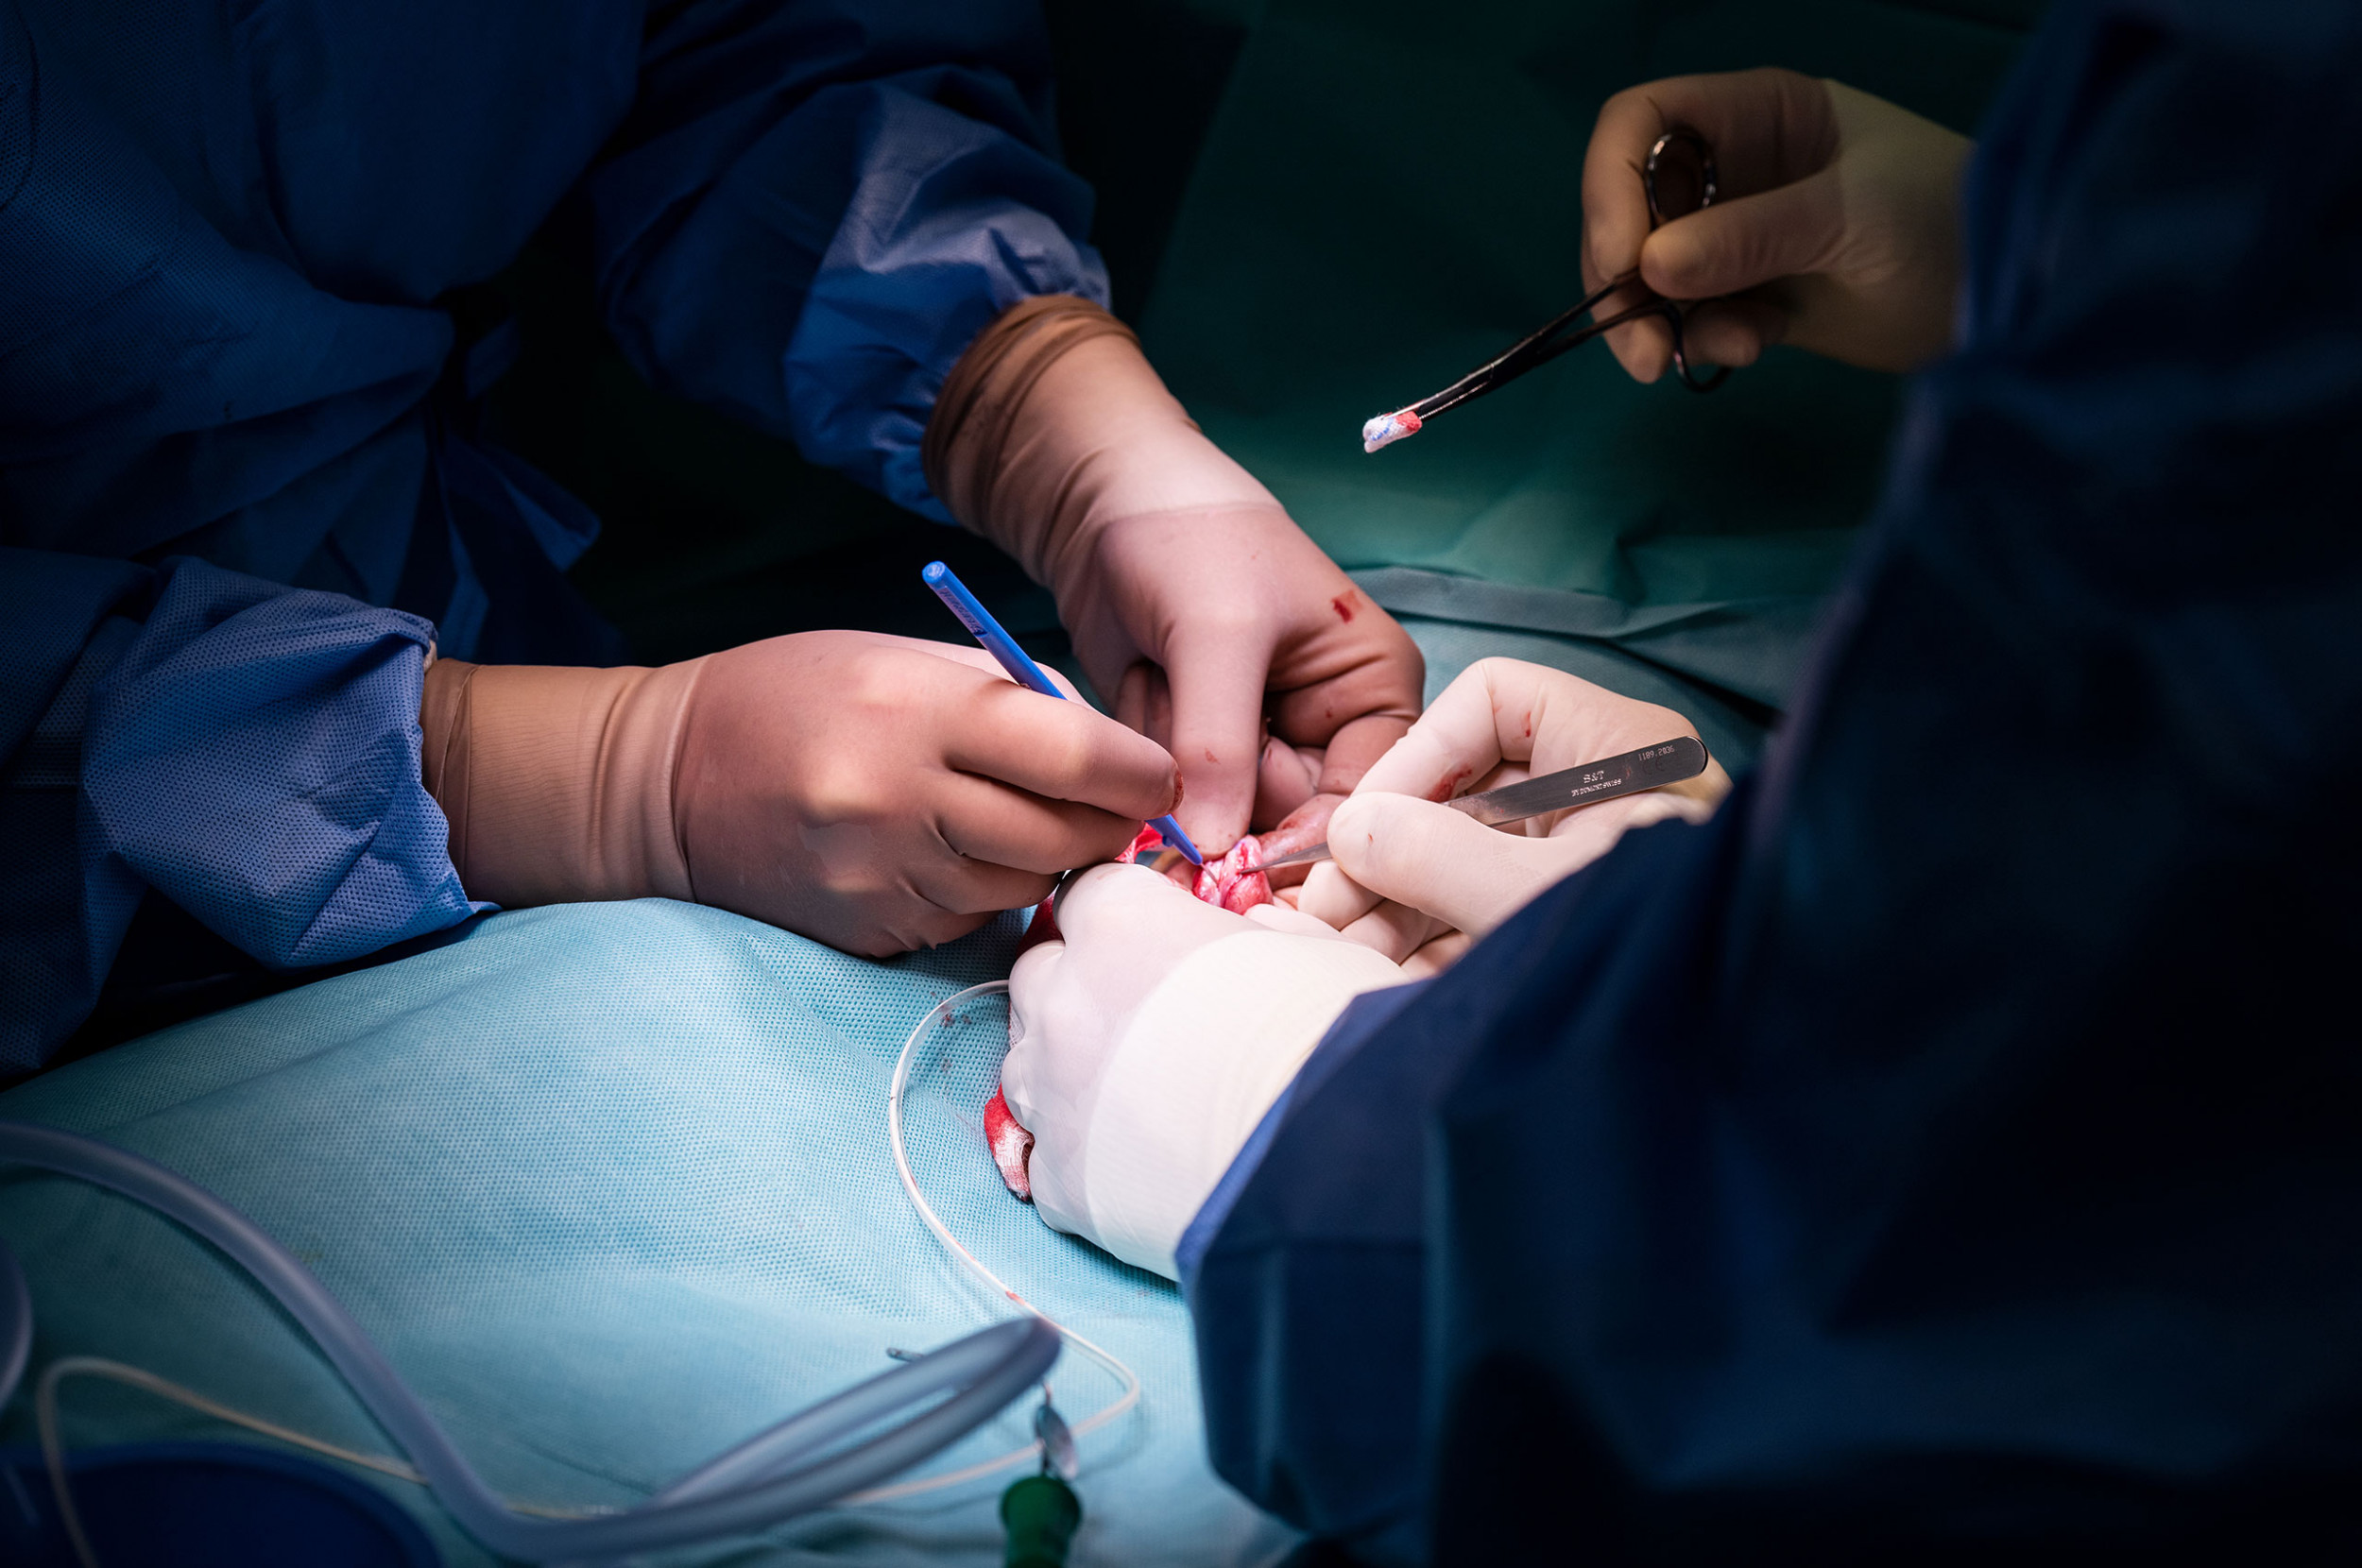 Die Hände der ChirurgInnen fotografiert während einem Eingriff